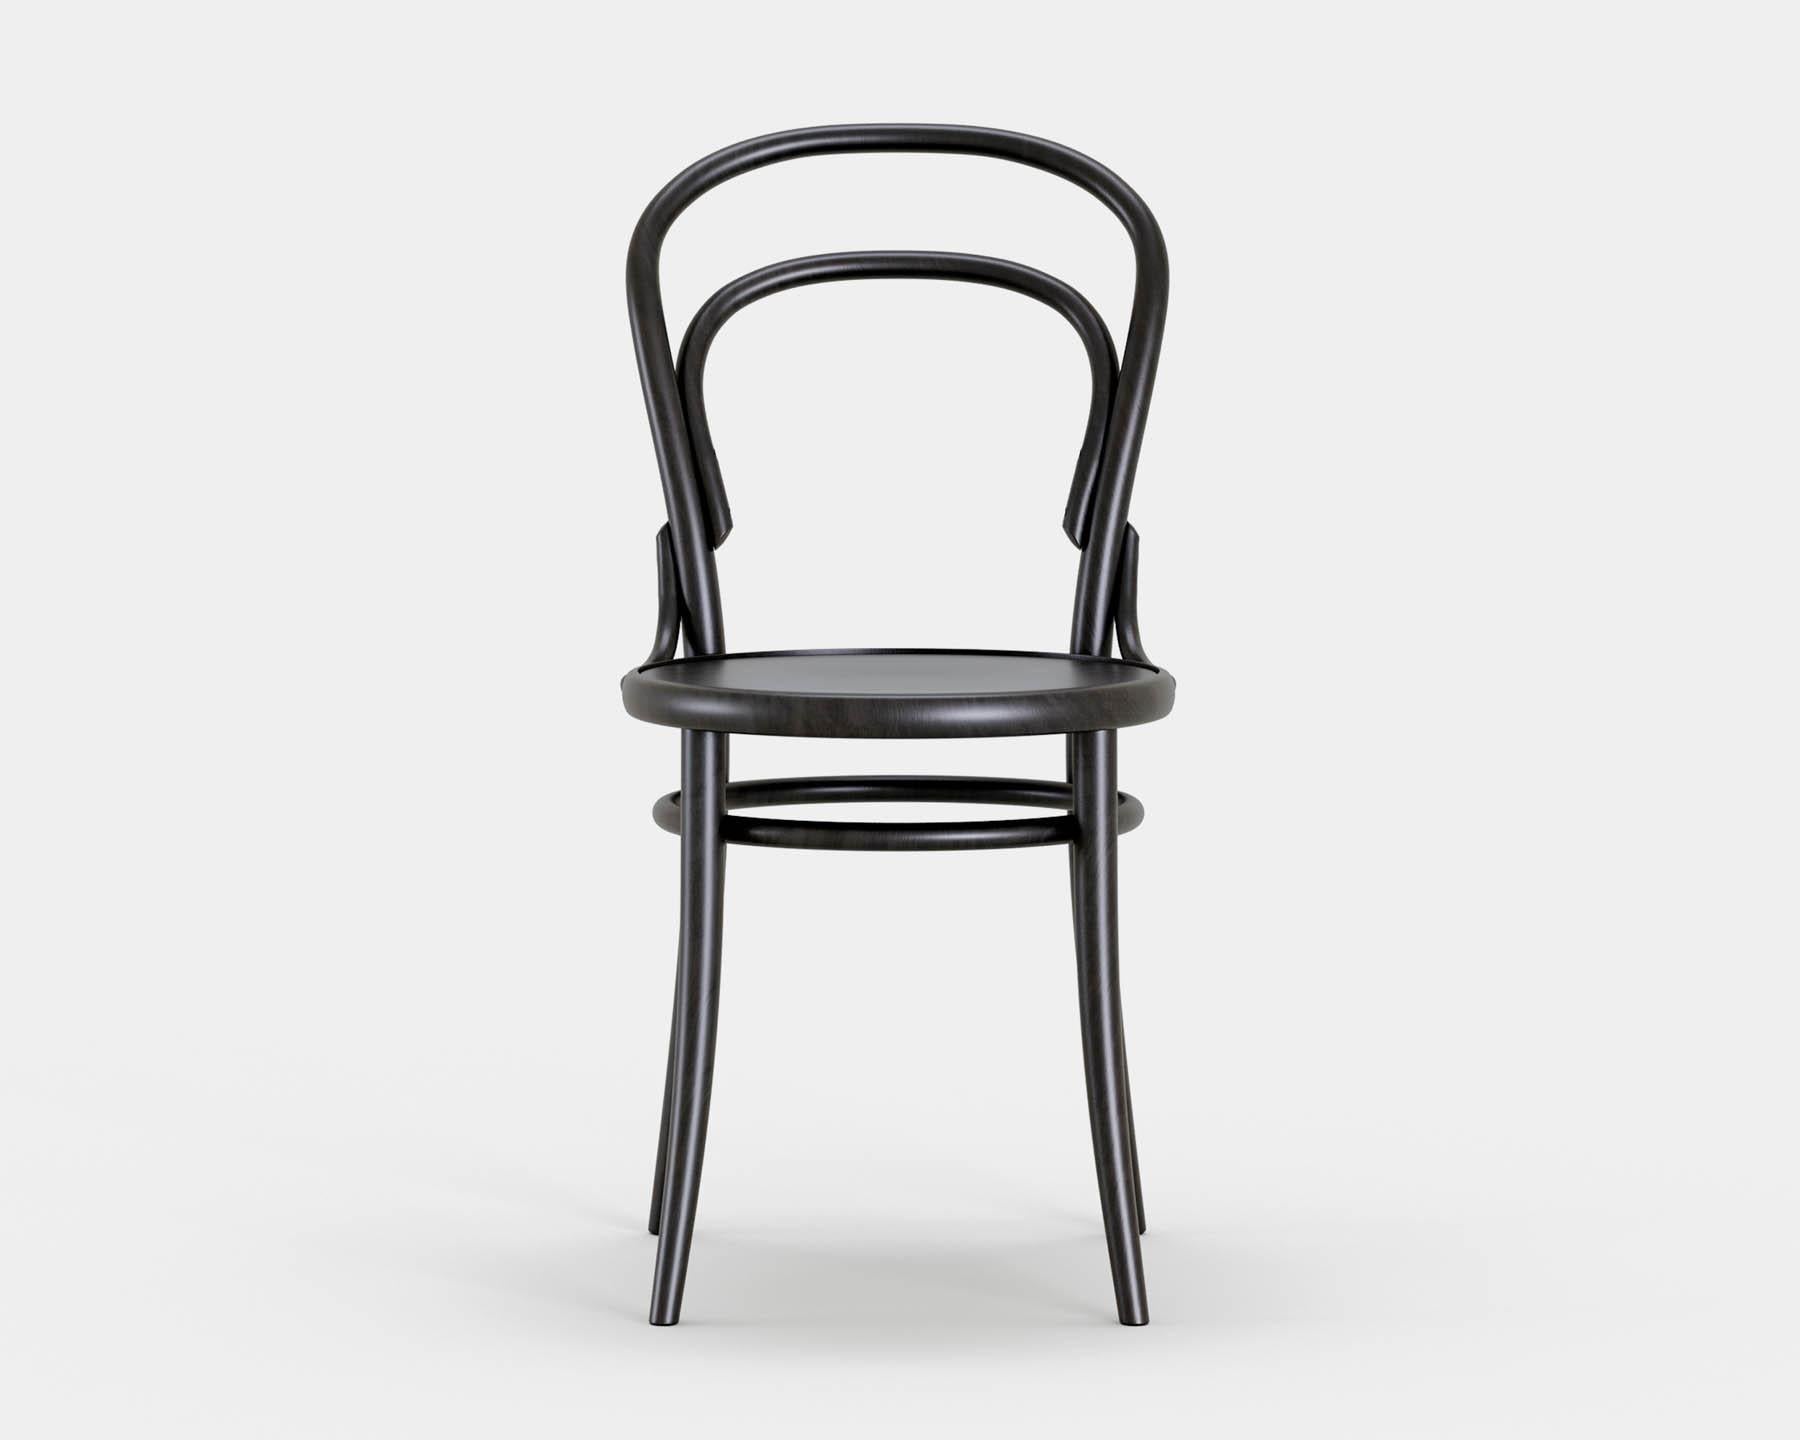 Chaise n° 14
Chaise de bistrot iconique conçue par Michael Thonet en 1869, aujourd'hui produite dans la même manufacture en République tchèque par TON. 

Bois : hêtre massif 
Finition : teinte noire
Assise : bois simple 

--
La chaise no. 14